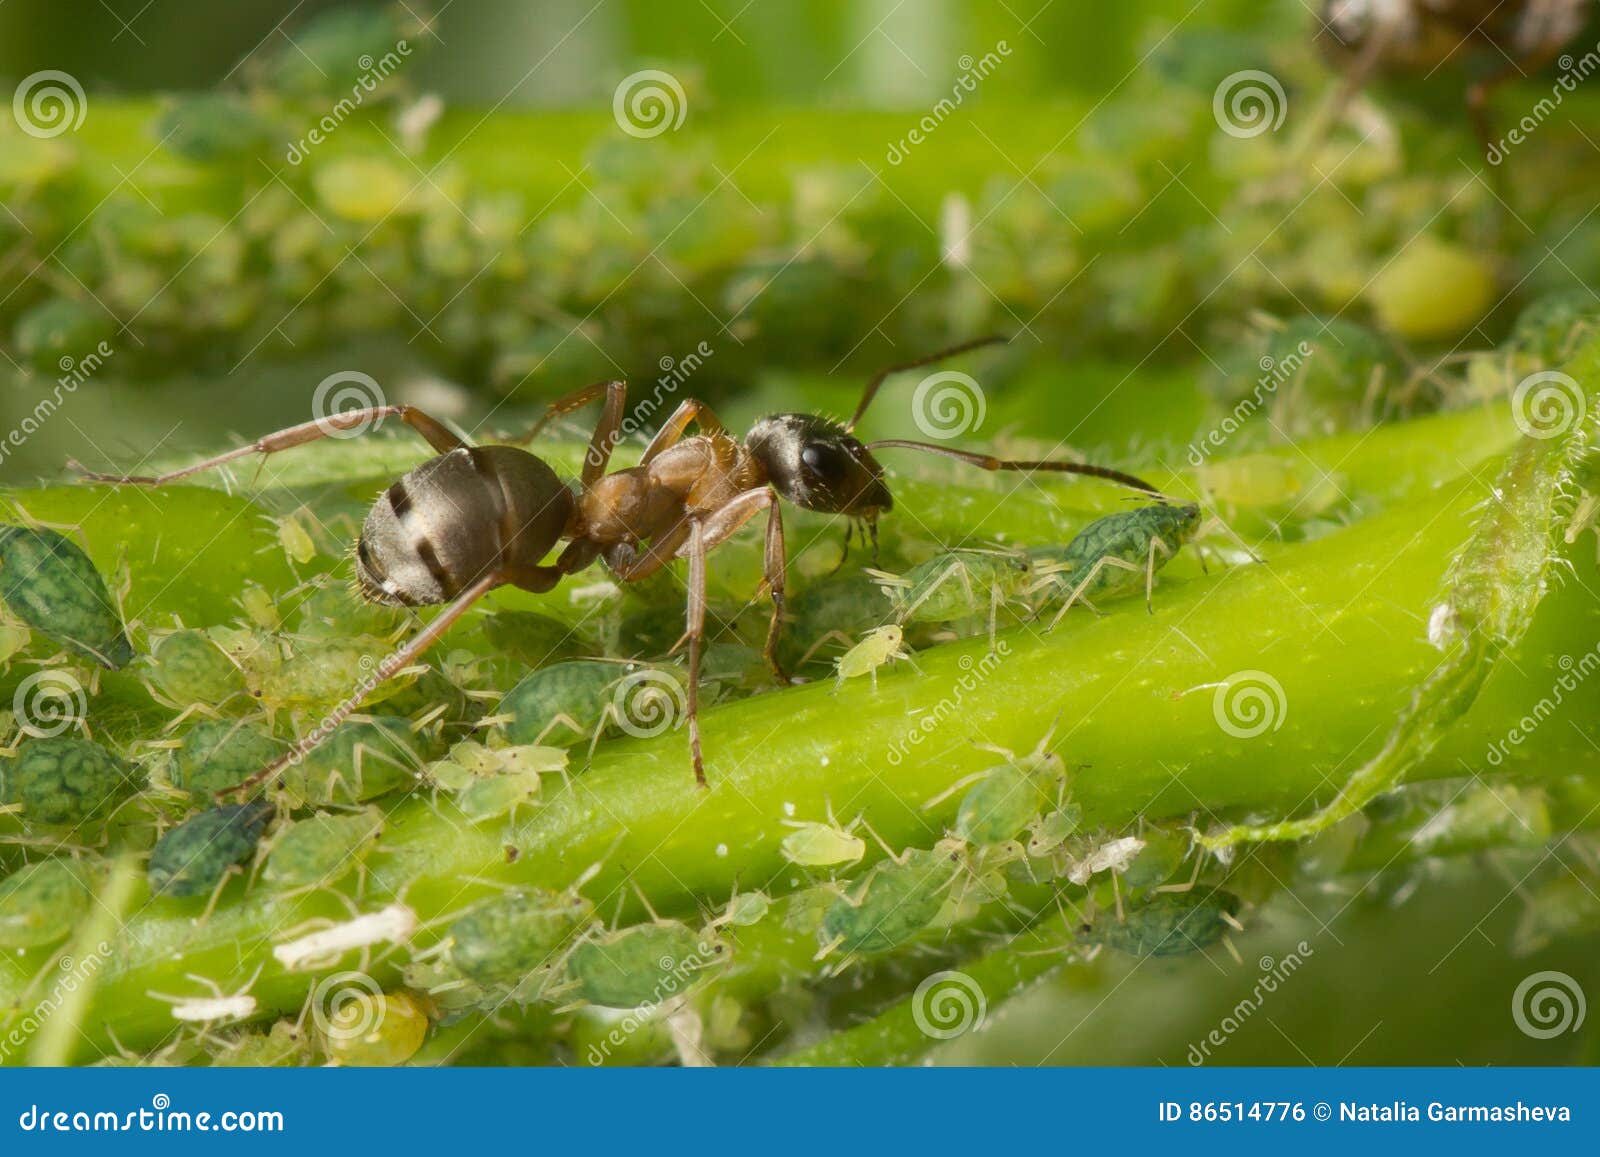 Тля рыжий муравей тип биотических отношений. Муравей и тля симбиоз. Муравьи пасут тлю. Тля насекомое муравьи. Муравьи доят тлю.